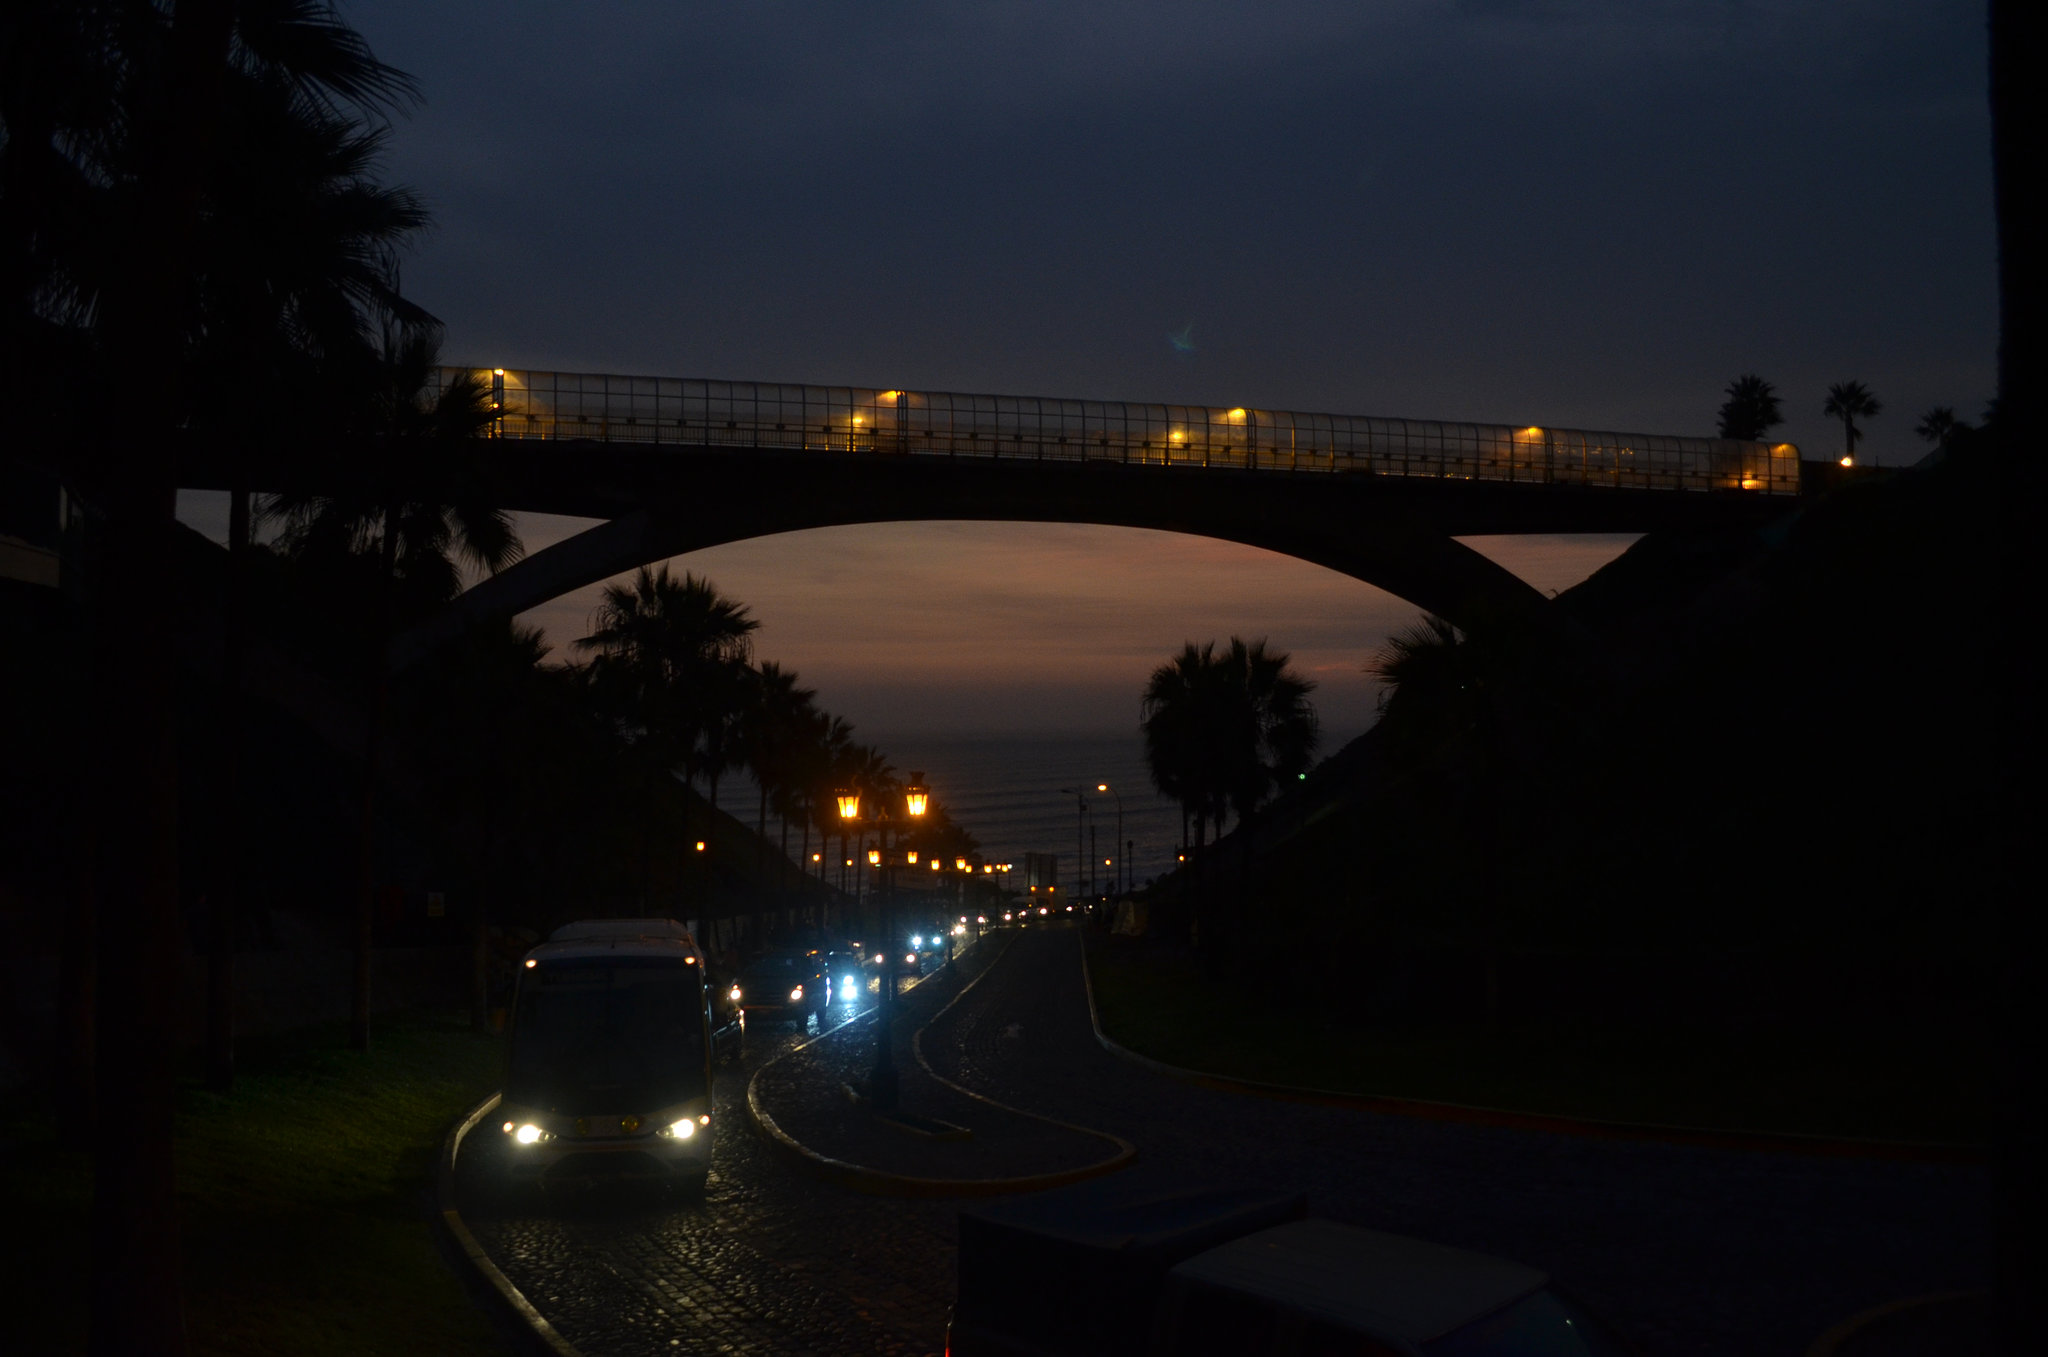 Lima, Bajada Balta Descent to the Ocean and Villena Bridge at Night